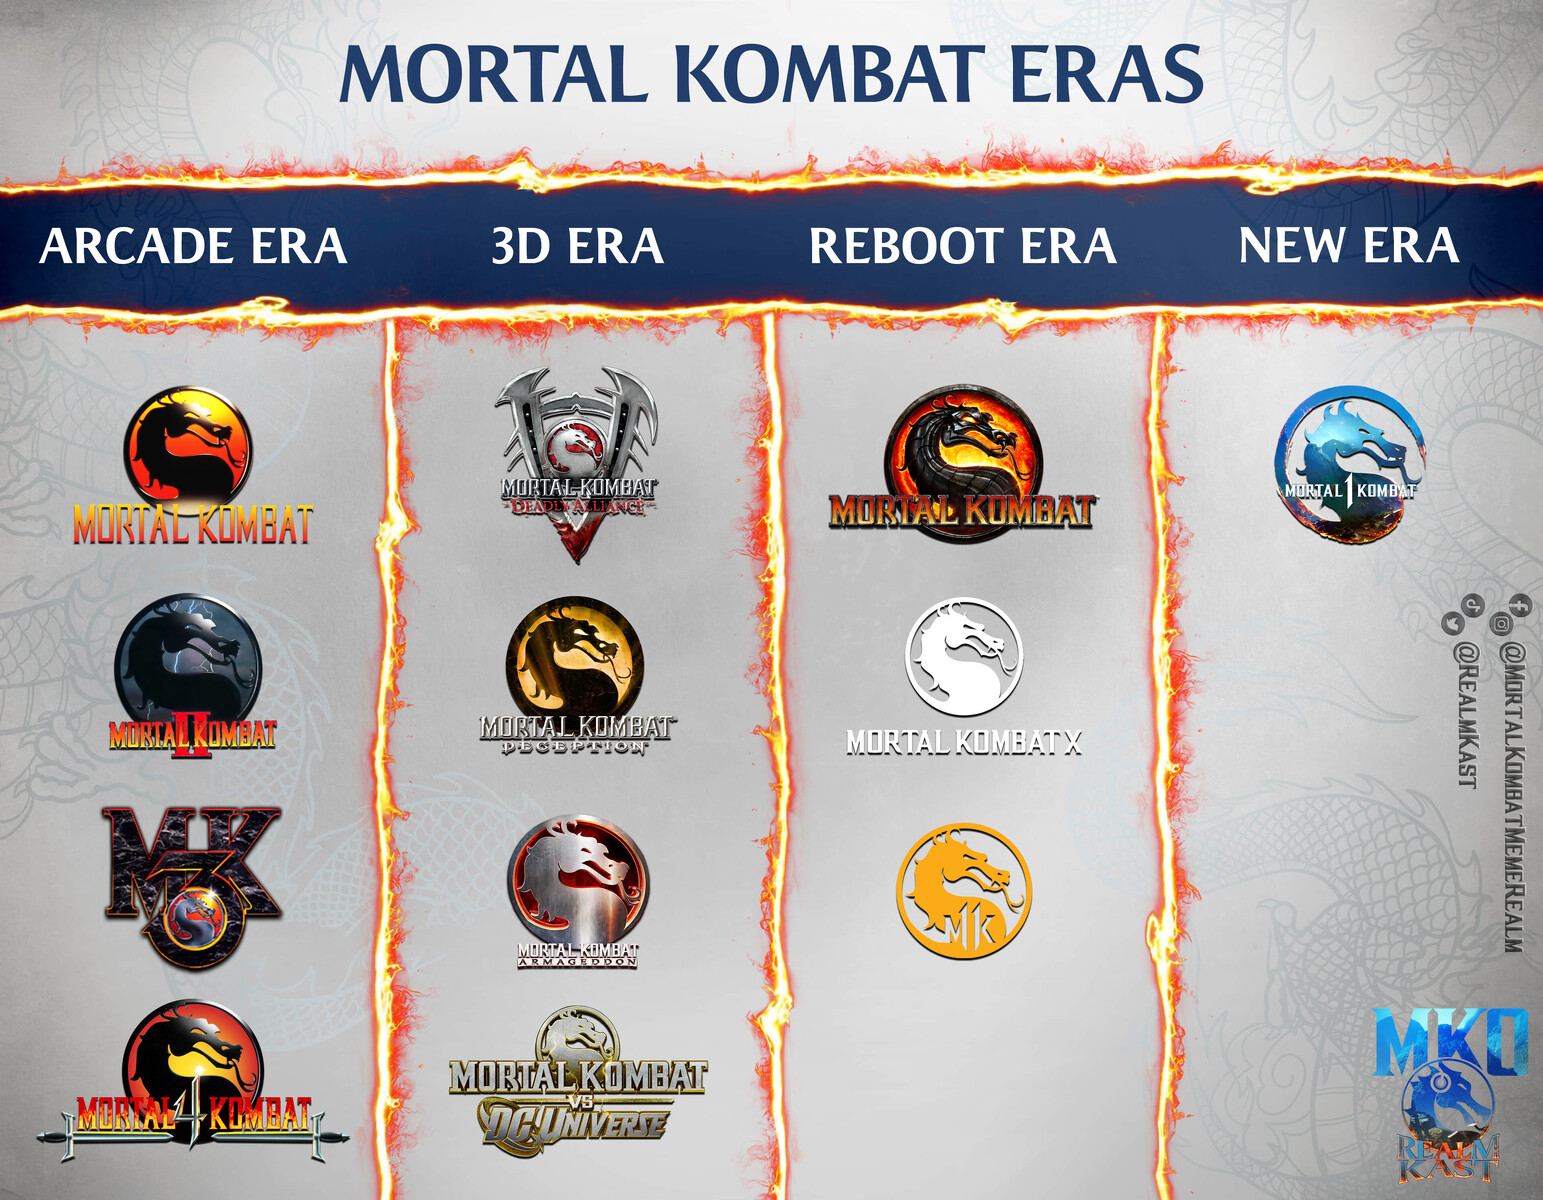 Mortal Kombat 4 Limited Edition #1 Reviews